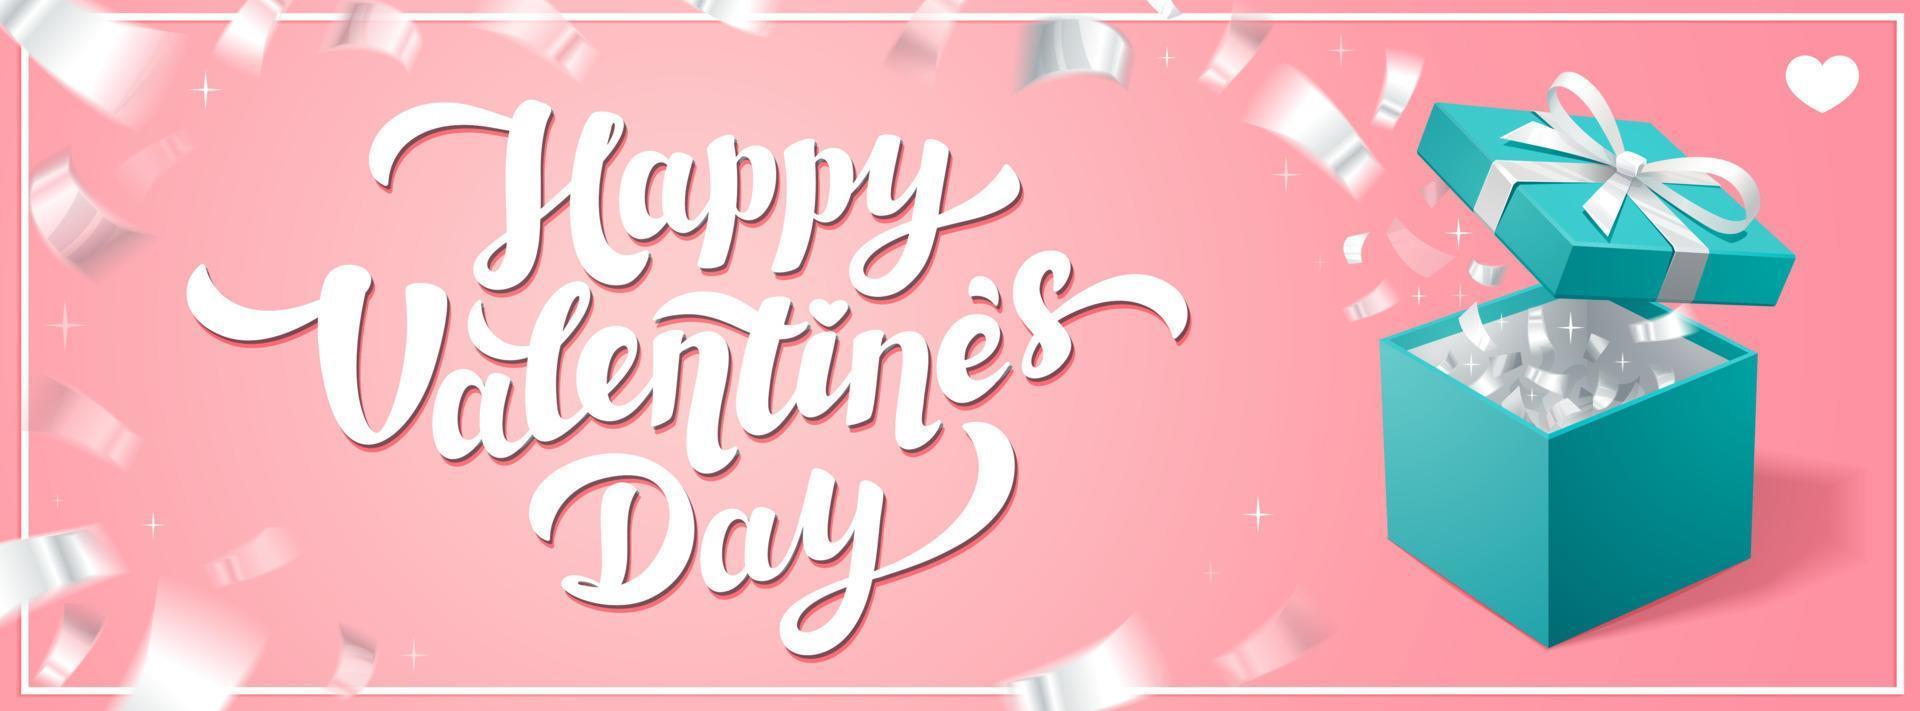 bannière ou couverture horizontale de vecteur de jour d'amour. voeux de bonne saint valentin avec boîte à bijoux turquoise et confettis argentés sur fond rose. illustration vectorielle